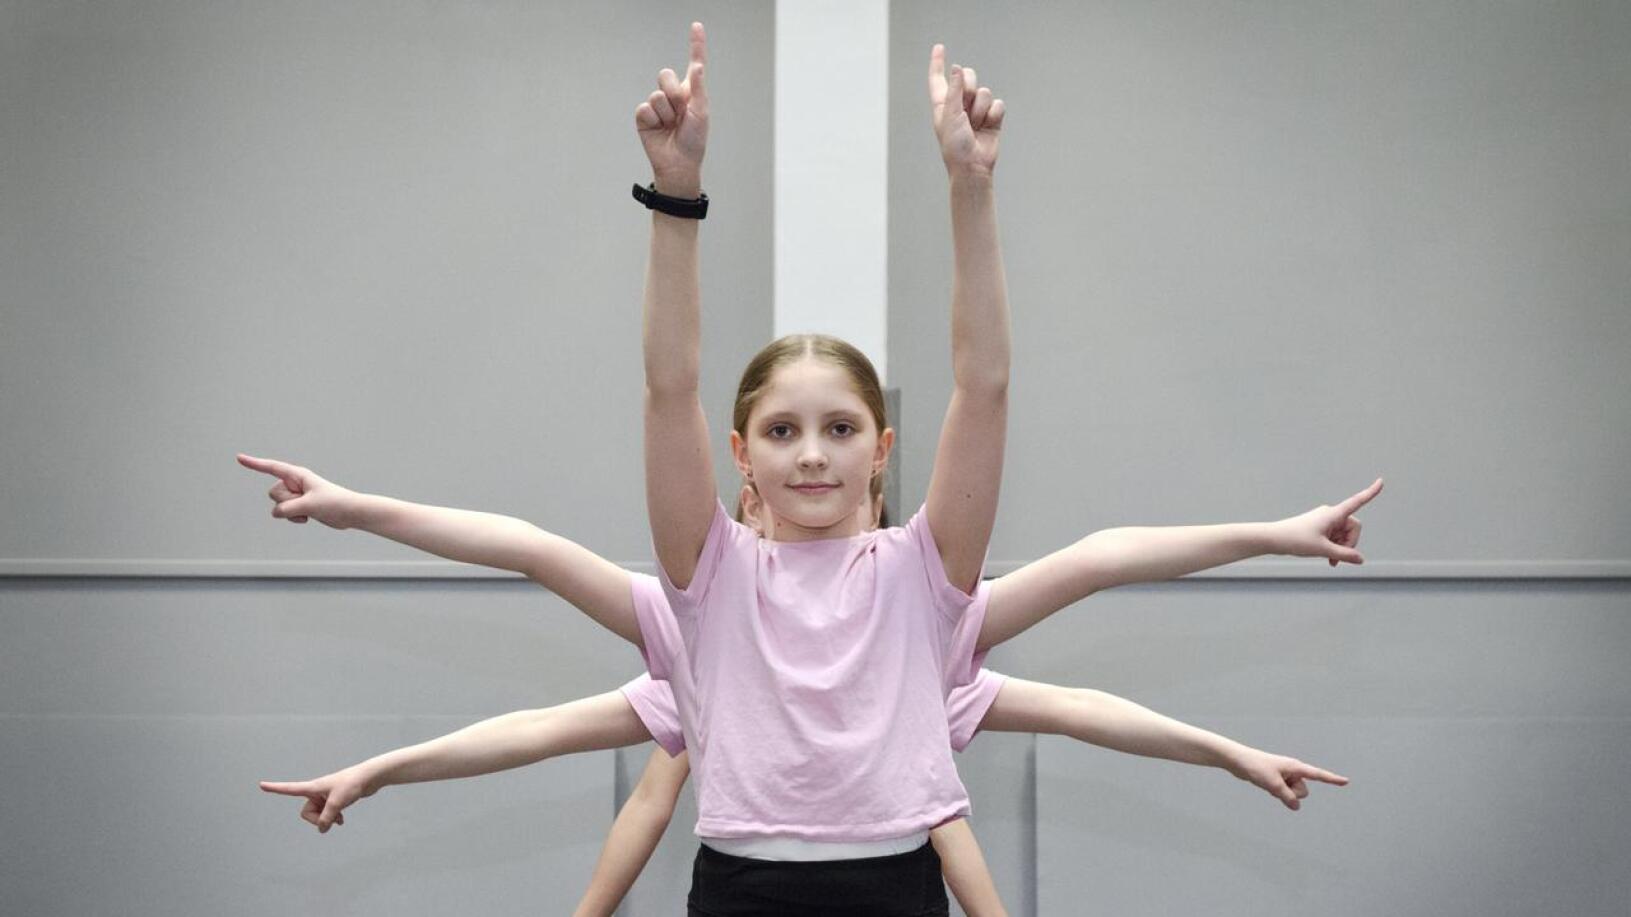 Tytöt ovat harjoitelleet esitystään ahkerasti koulun liikuntasalissa. Tanssiliikkeensä he ovat sovittaneet tarkoin yhteen ja musiikkiin sopivaksi.